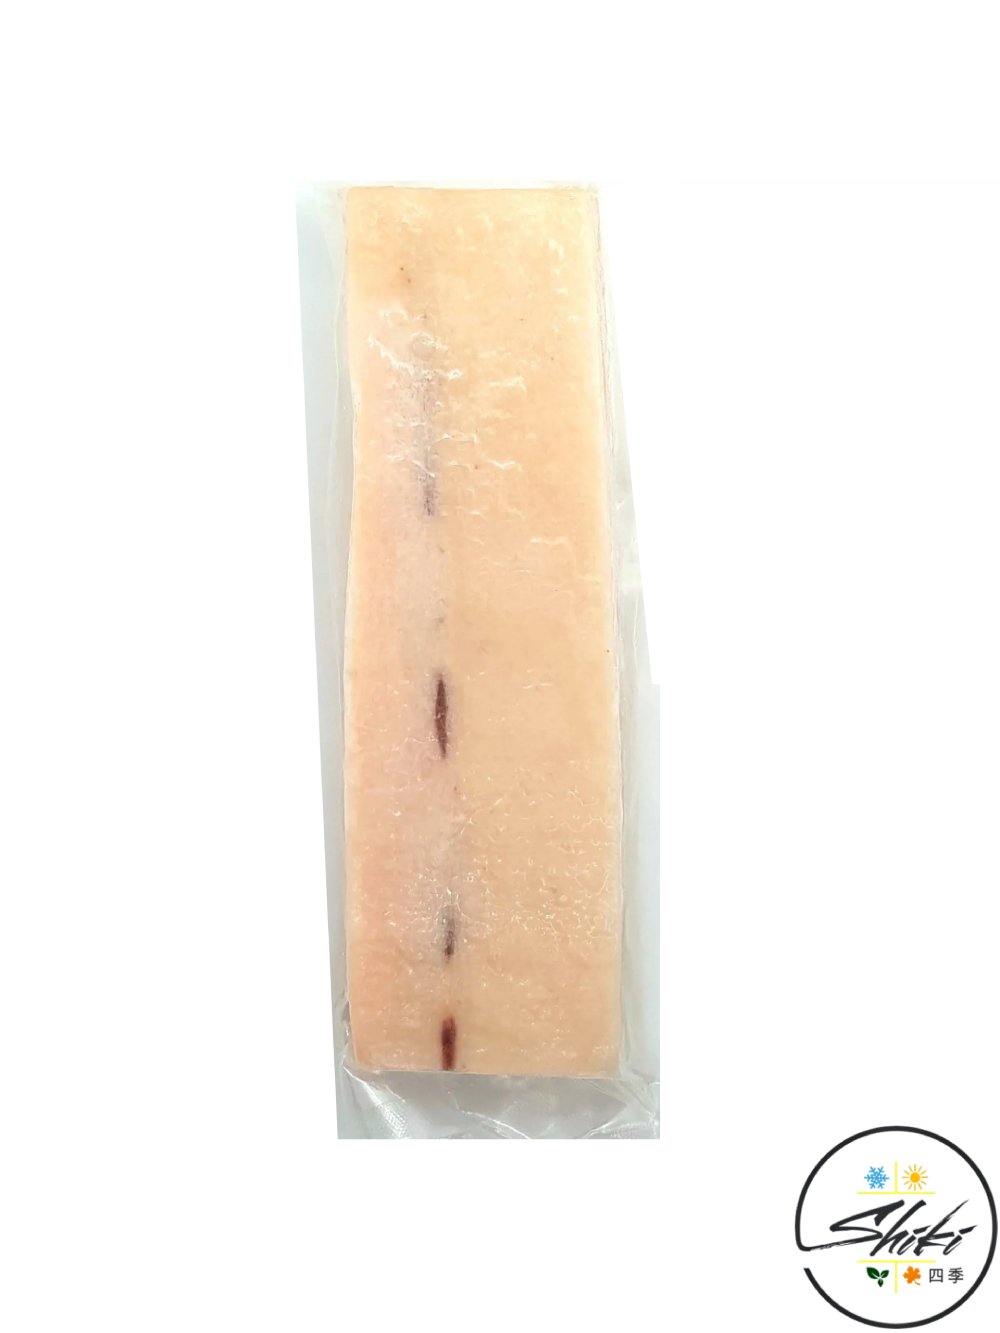 Sashimi Grade Mekajiki Belly Premium Swordfish Fillet